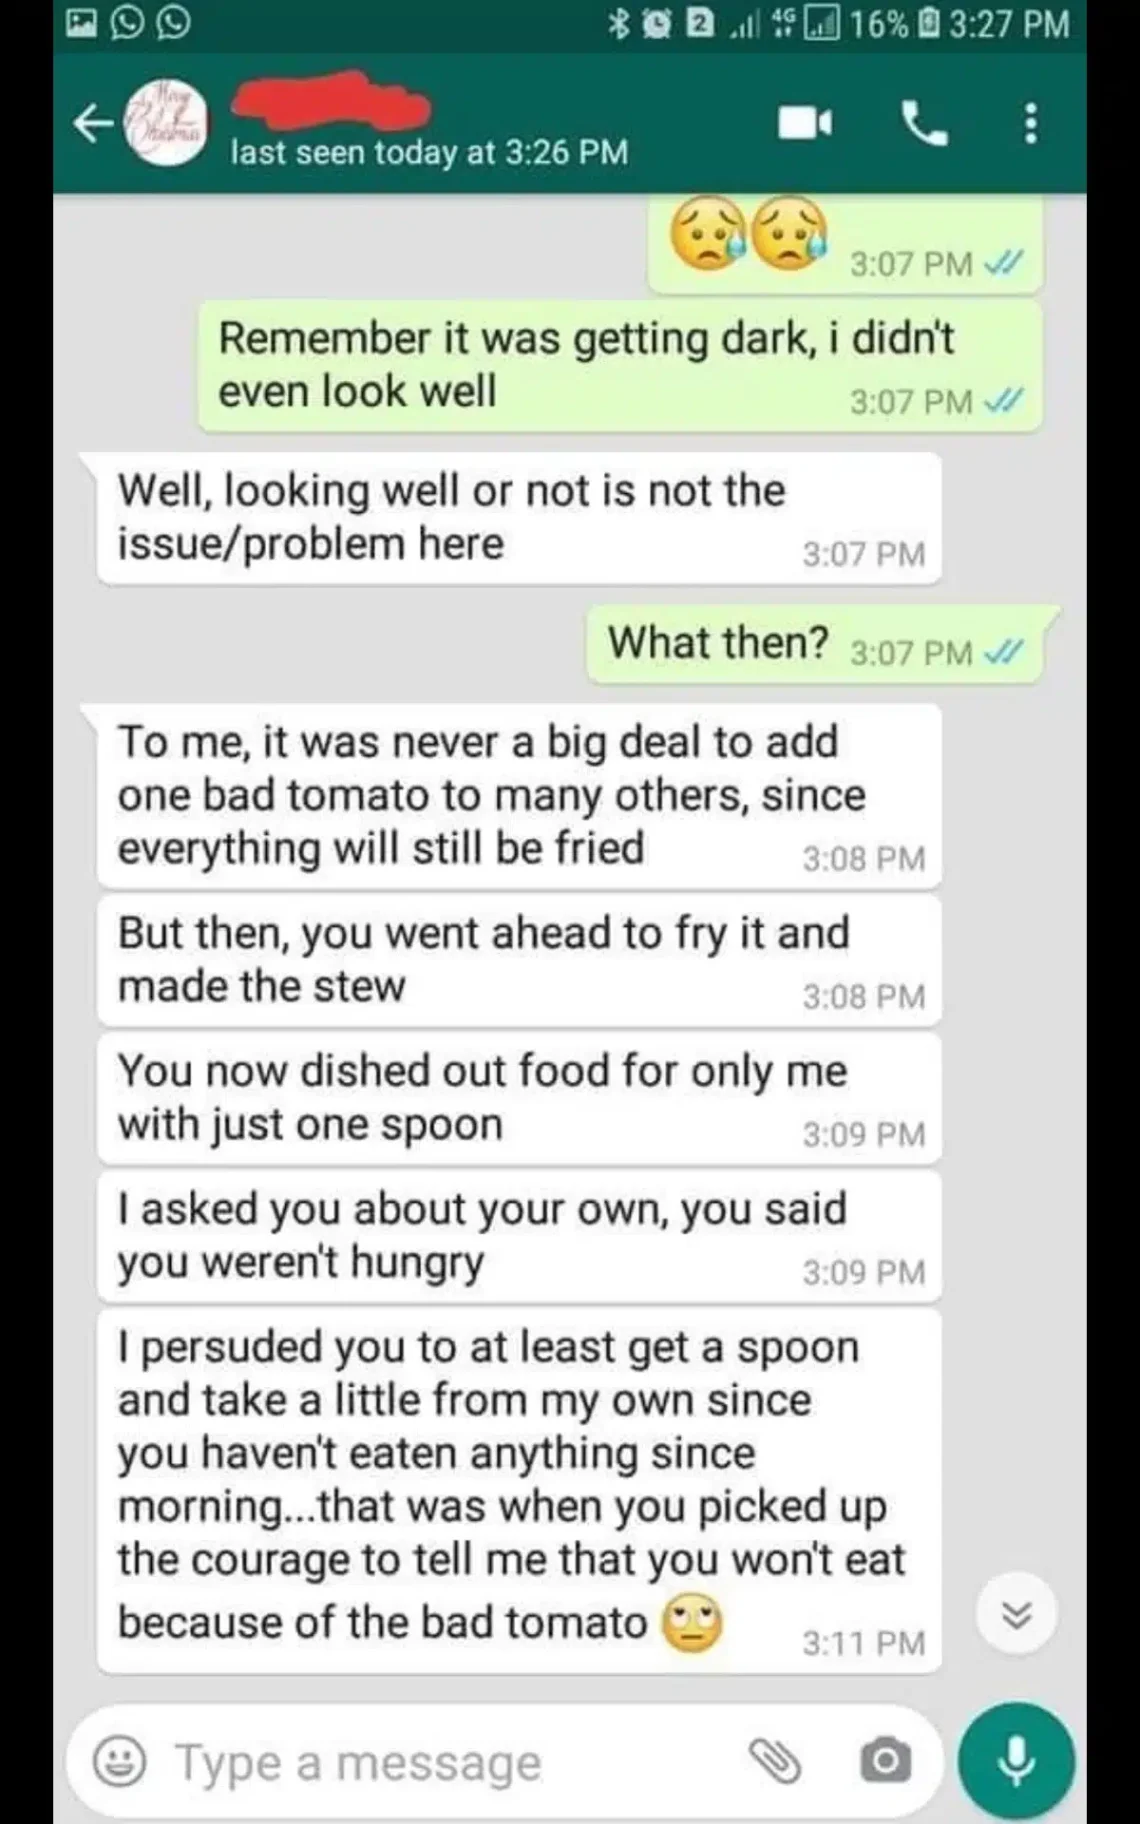 Un homme rompt d'avec sa petite amie pour avoir cuisiné un ragoût avec des tomates pourries. Elle a refusé de manger le repas.